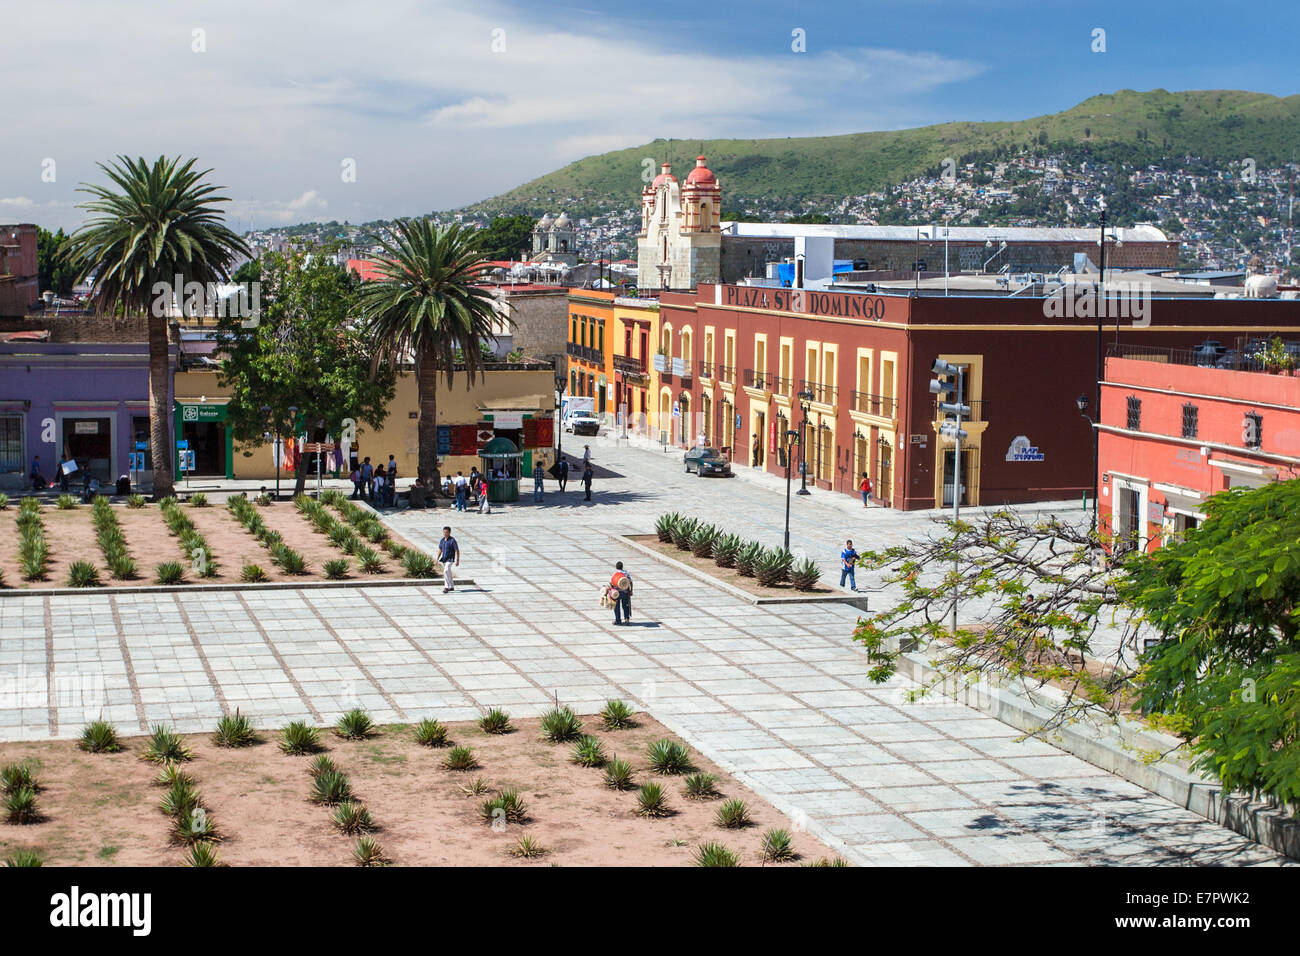 Santo Domingo Plaza nella zona del centro storico di Oaxaca, Messico. Foto Stock